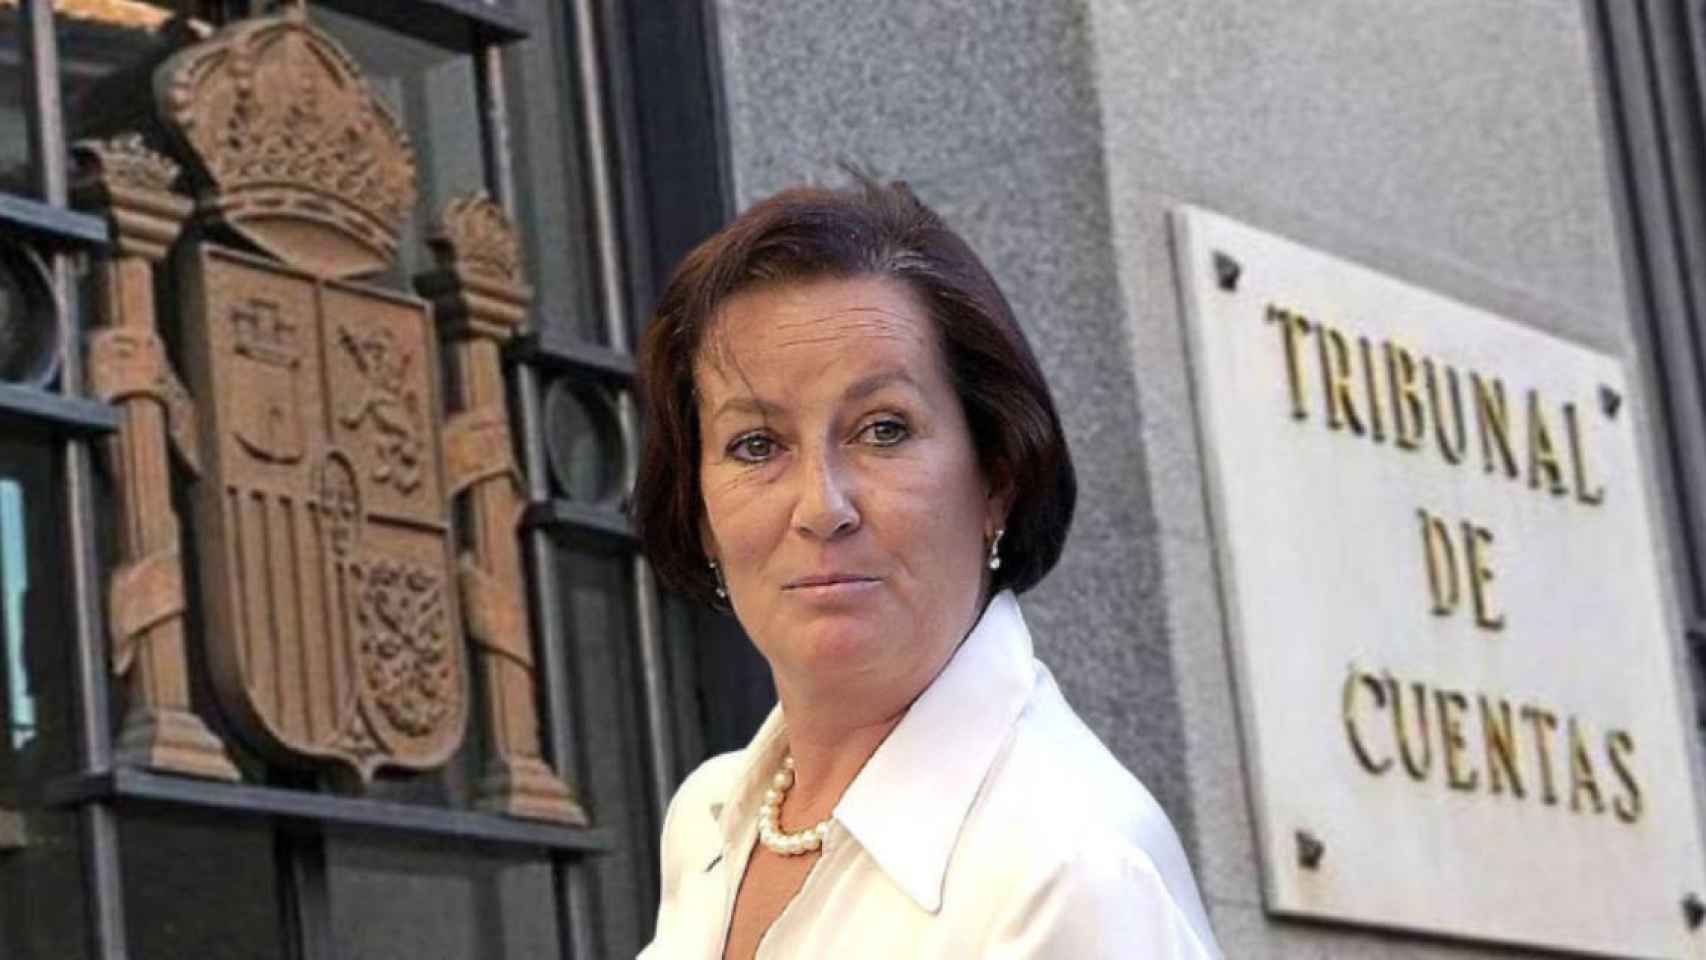 Margarita Mariscal de Gante, miembro del Tribunal de Cuentas / FOTOMONTAJE CG